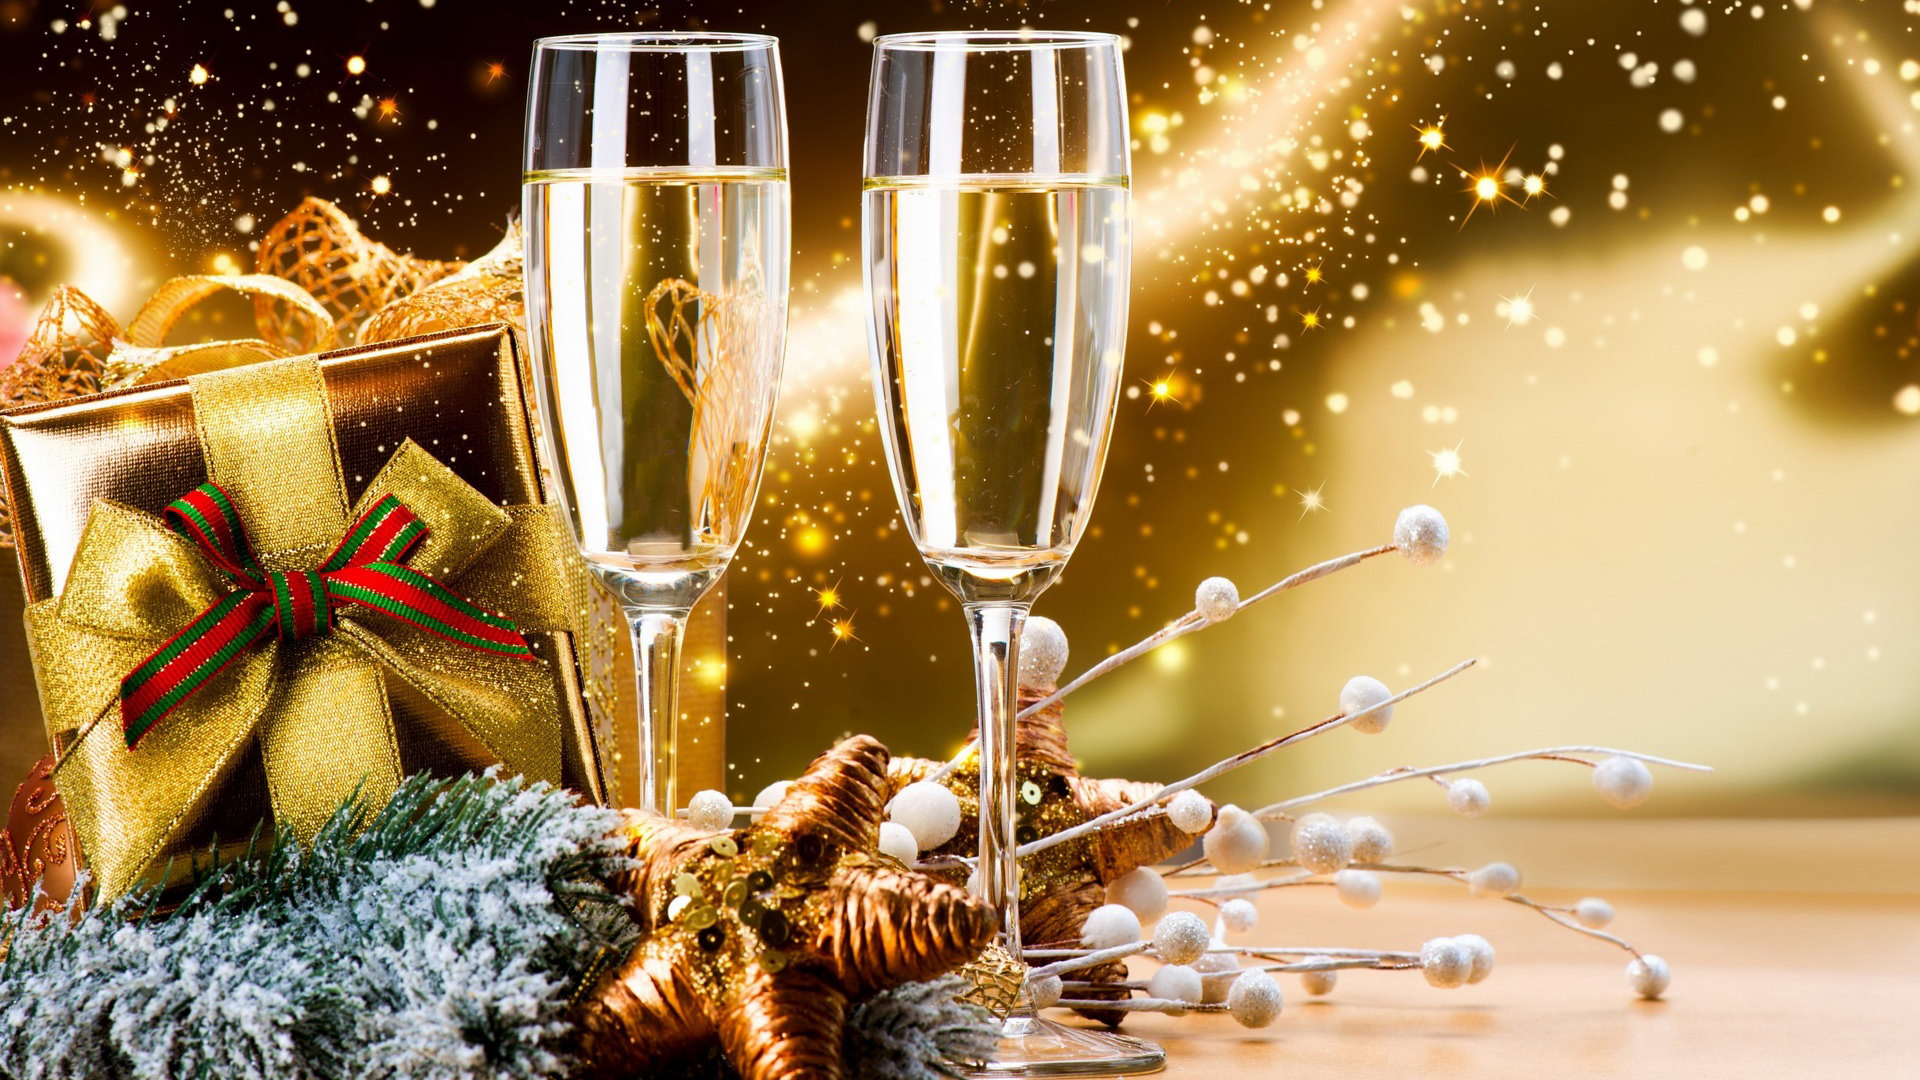 frohes neues jahr hd wallpaper,champagner,getränk,champagner stielgläser,neujahr,alkoholisches getränk